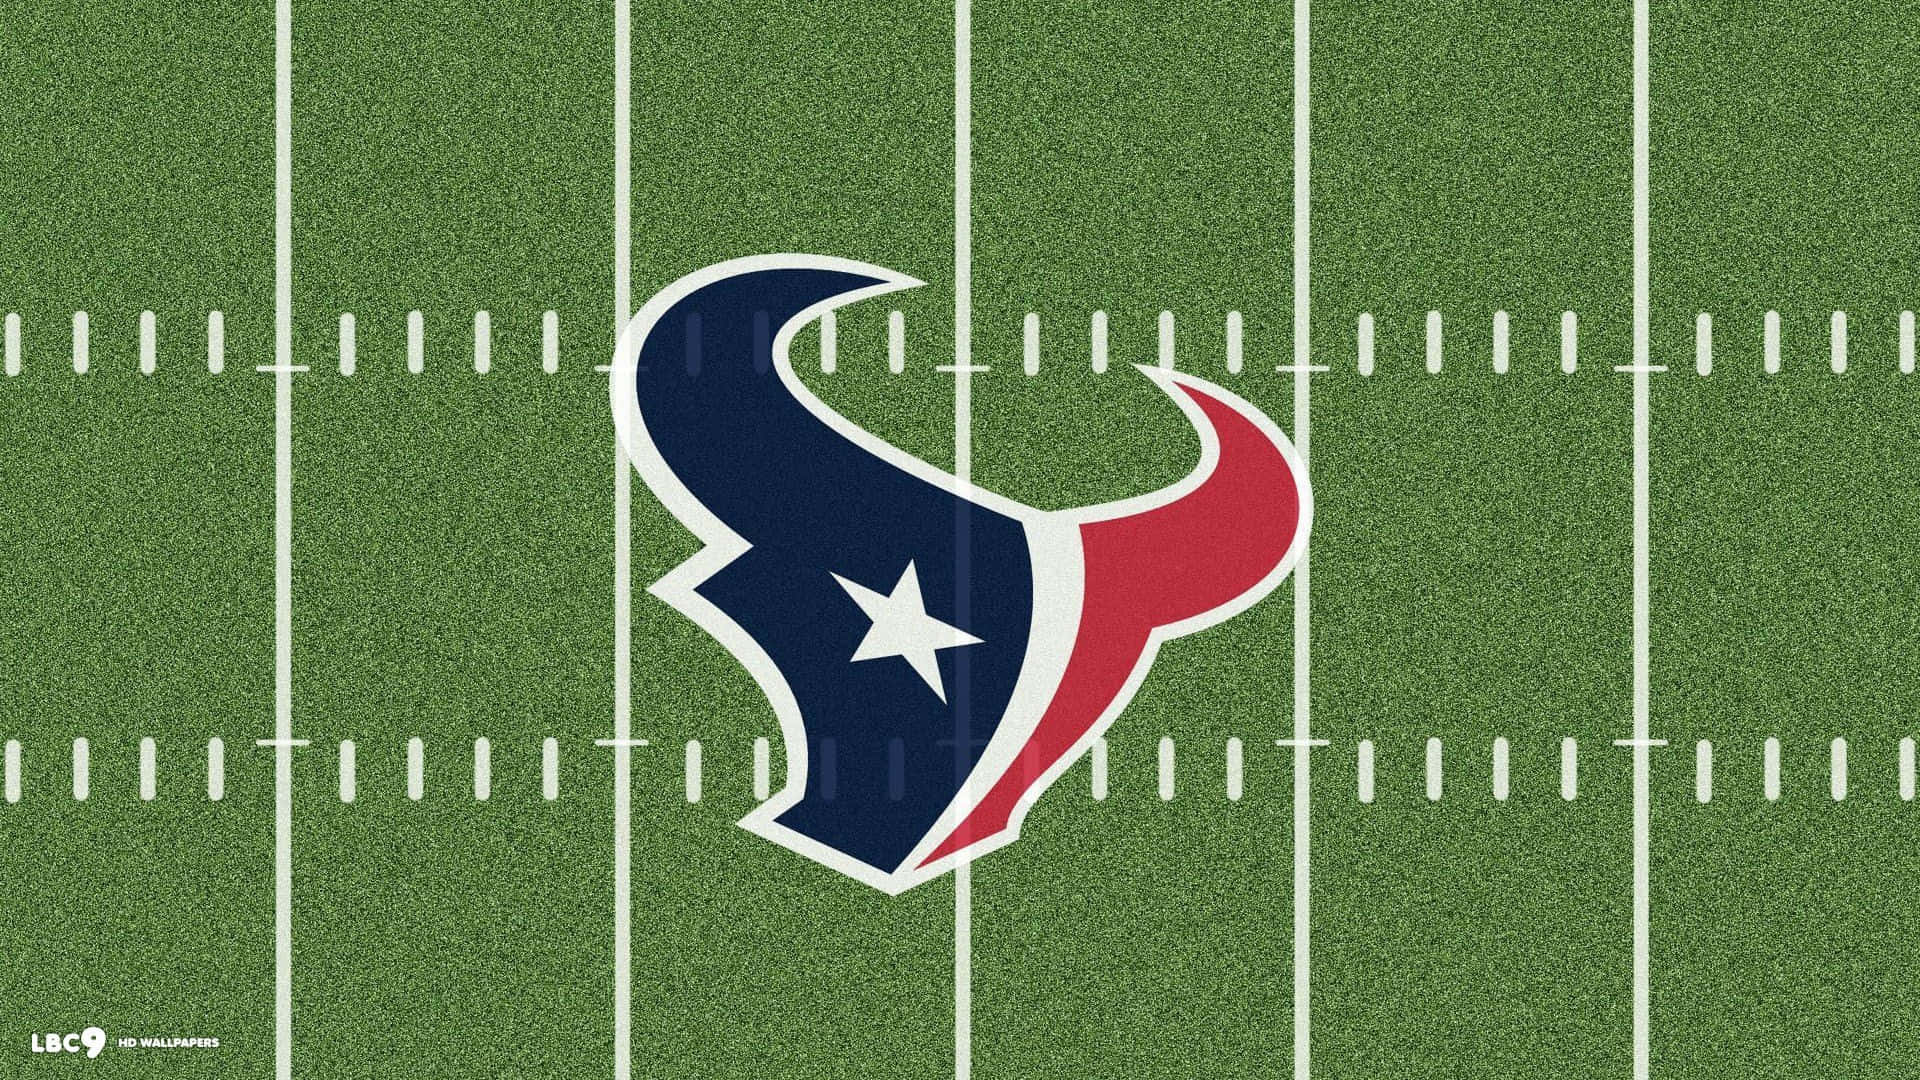 Daslogo Des Houston Texans Football-teams. Wallpaper